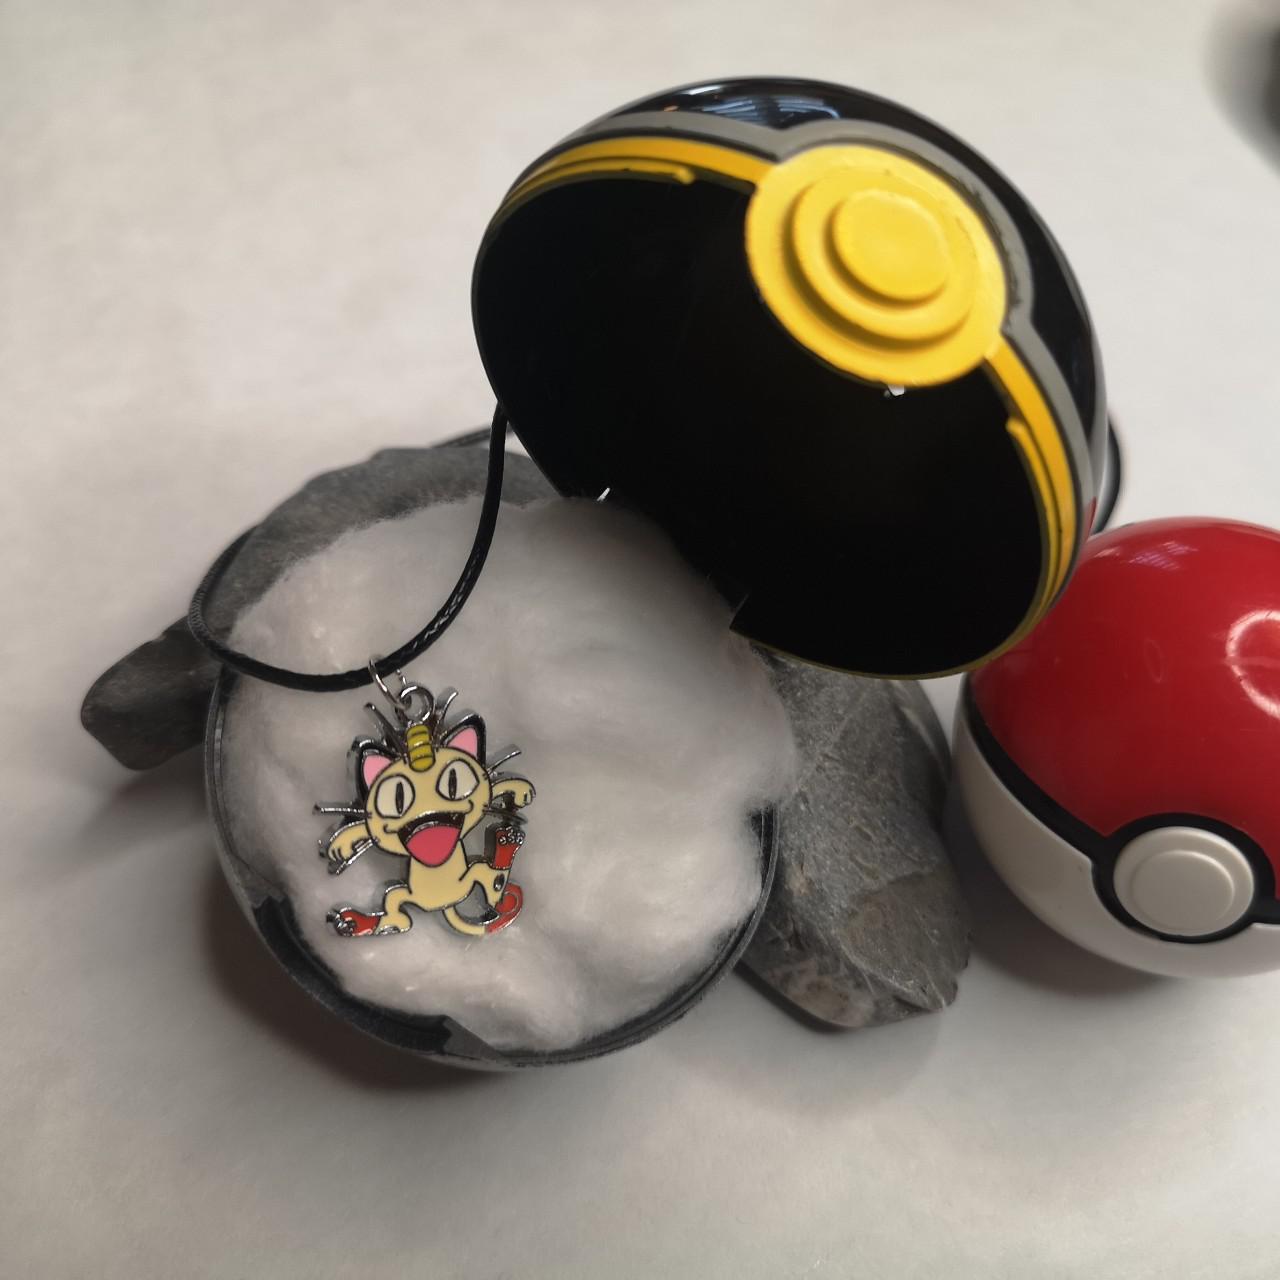 Product Image 2 - Flareon Pendant Pokemon Pendant Necklace
Customise